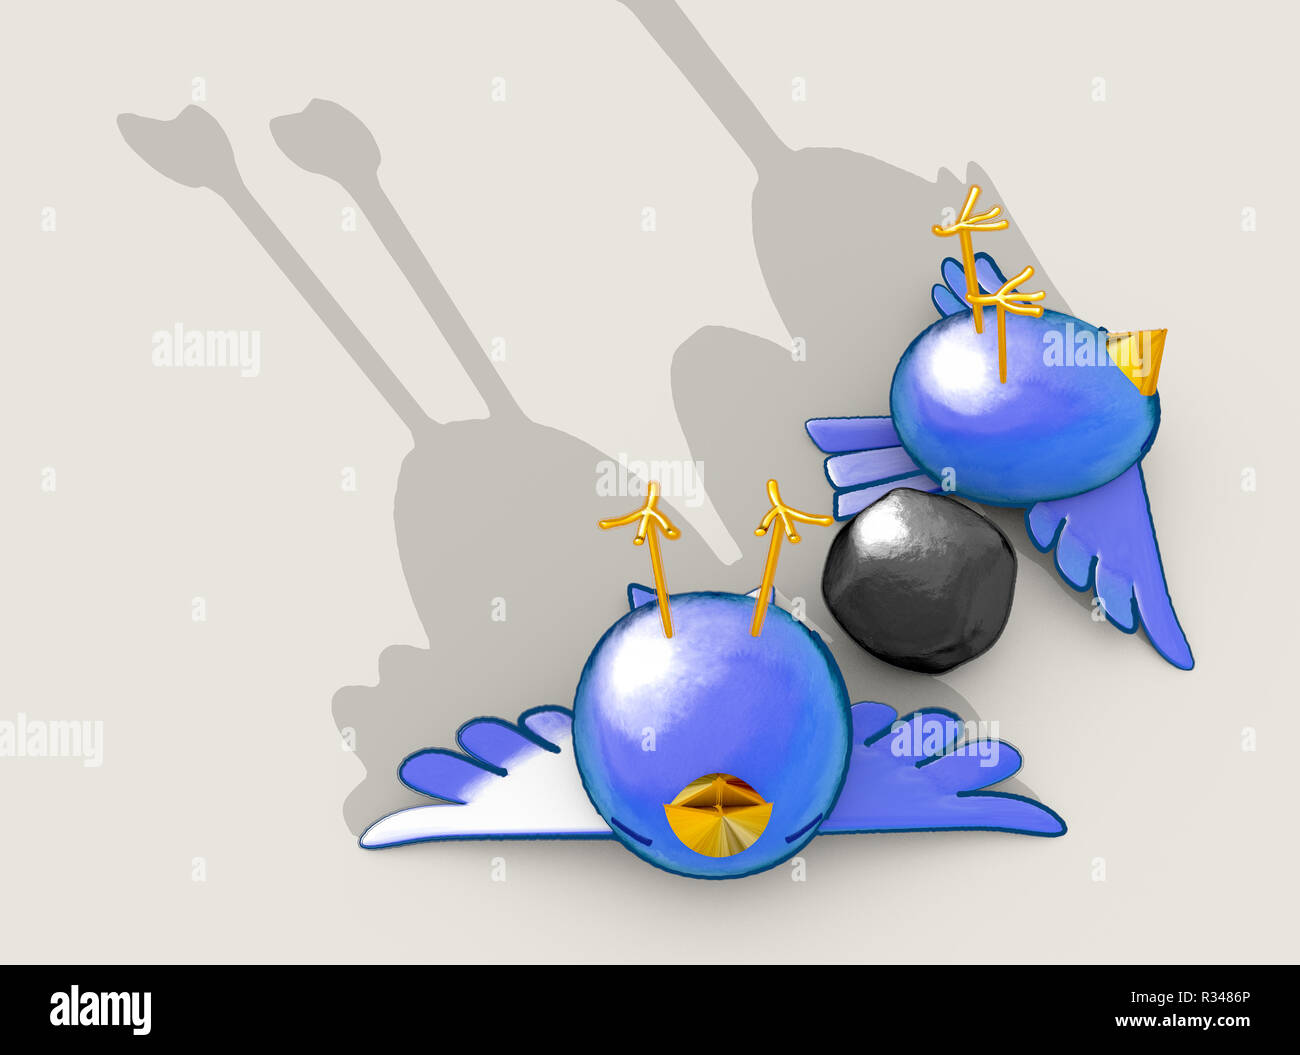 Cartoon zwei Stil blauen Vögel offenbar tot neben einem grauen Stein mit einer wörtlichen Darstellung des sagen zwei Fliegen mit einer Klappe - 3D-Rendering Stockfoto